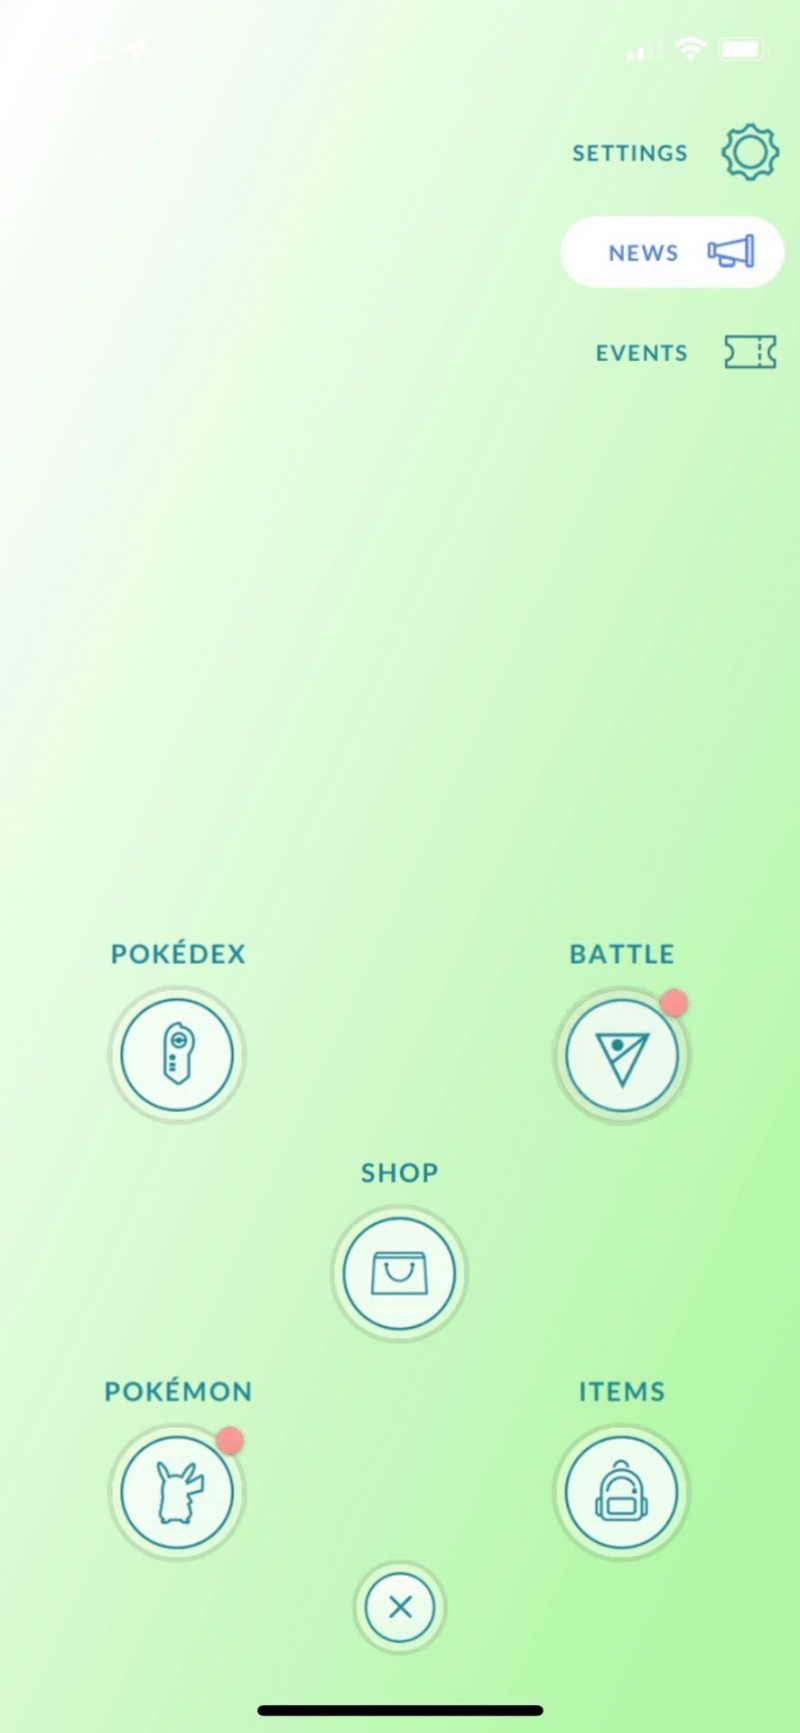   قم بتوصيل Poke Ball Plus بـ Pokémon Go اضغط على زر الترس في الزاوية اليمنى العليا